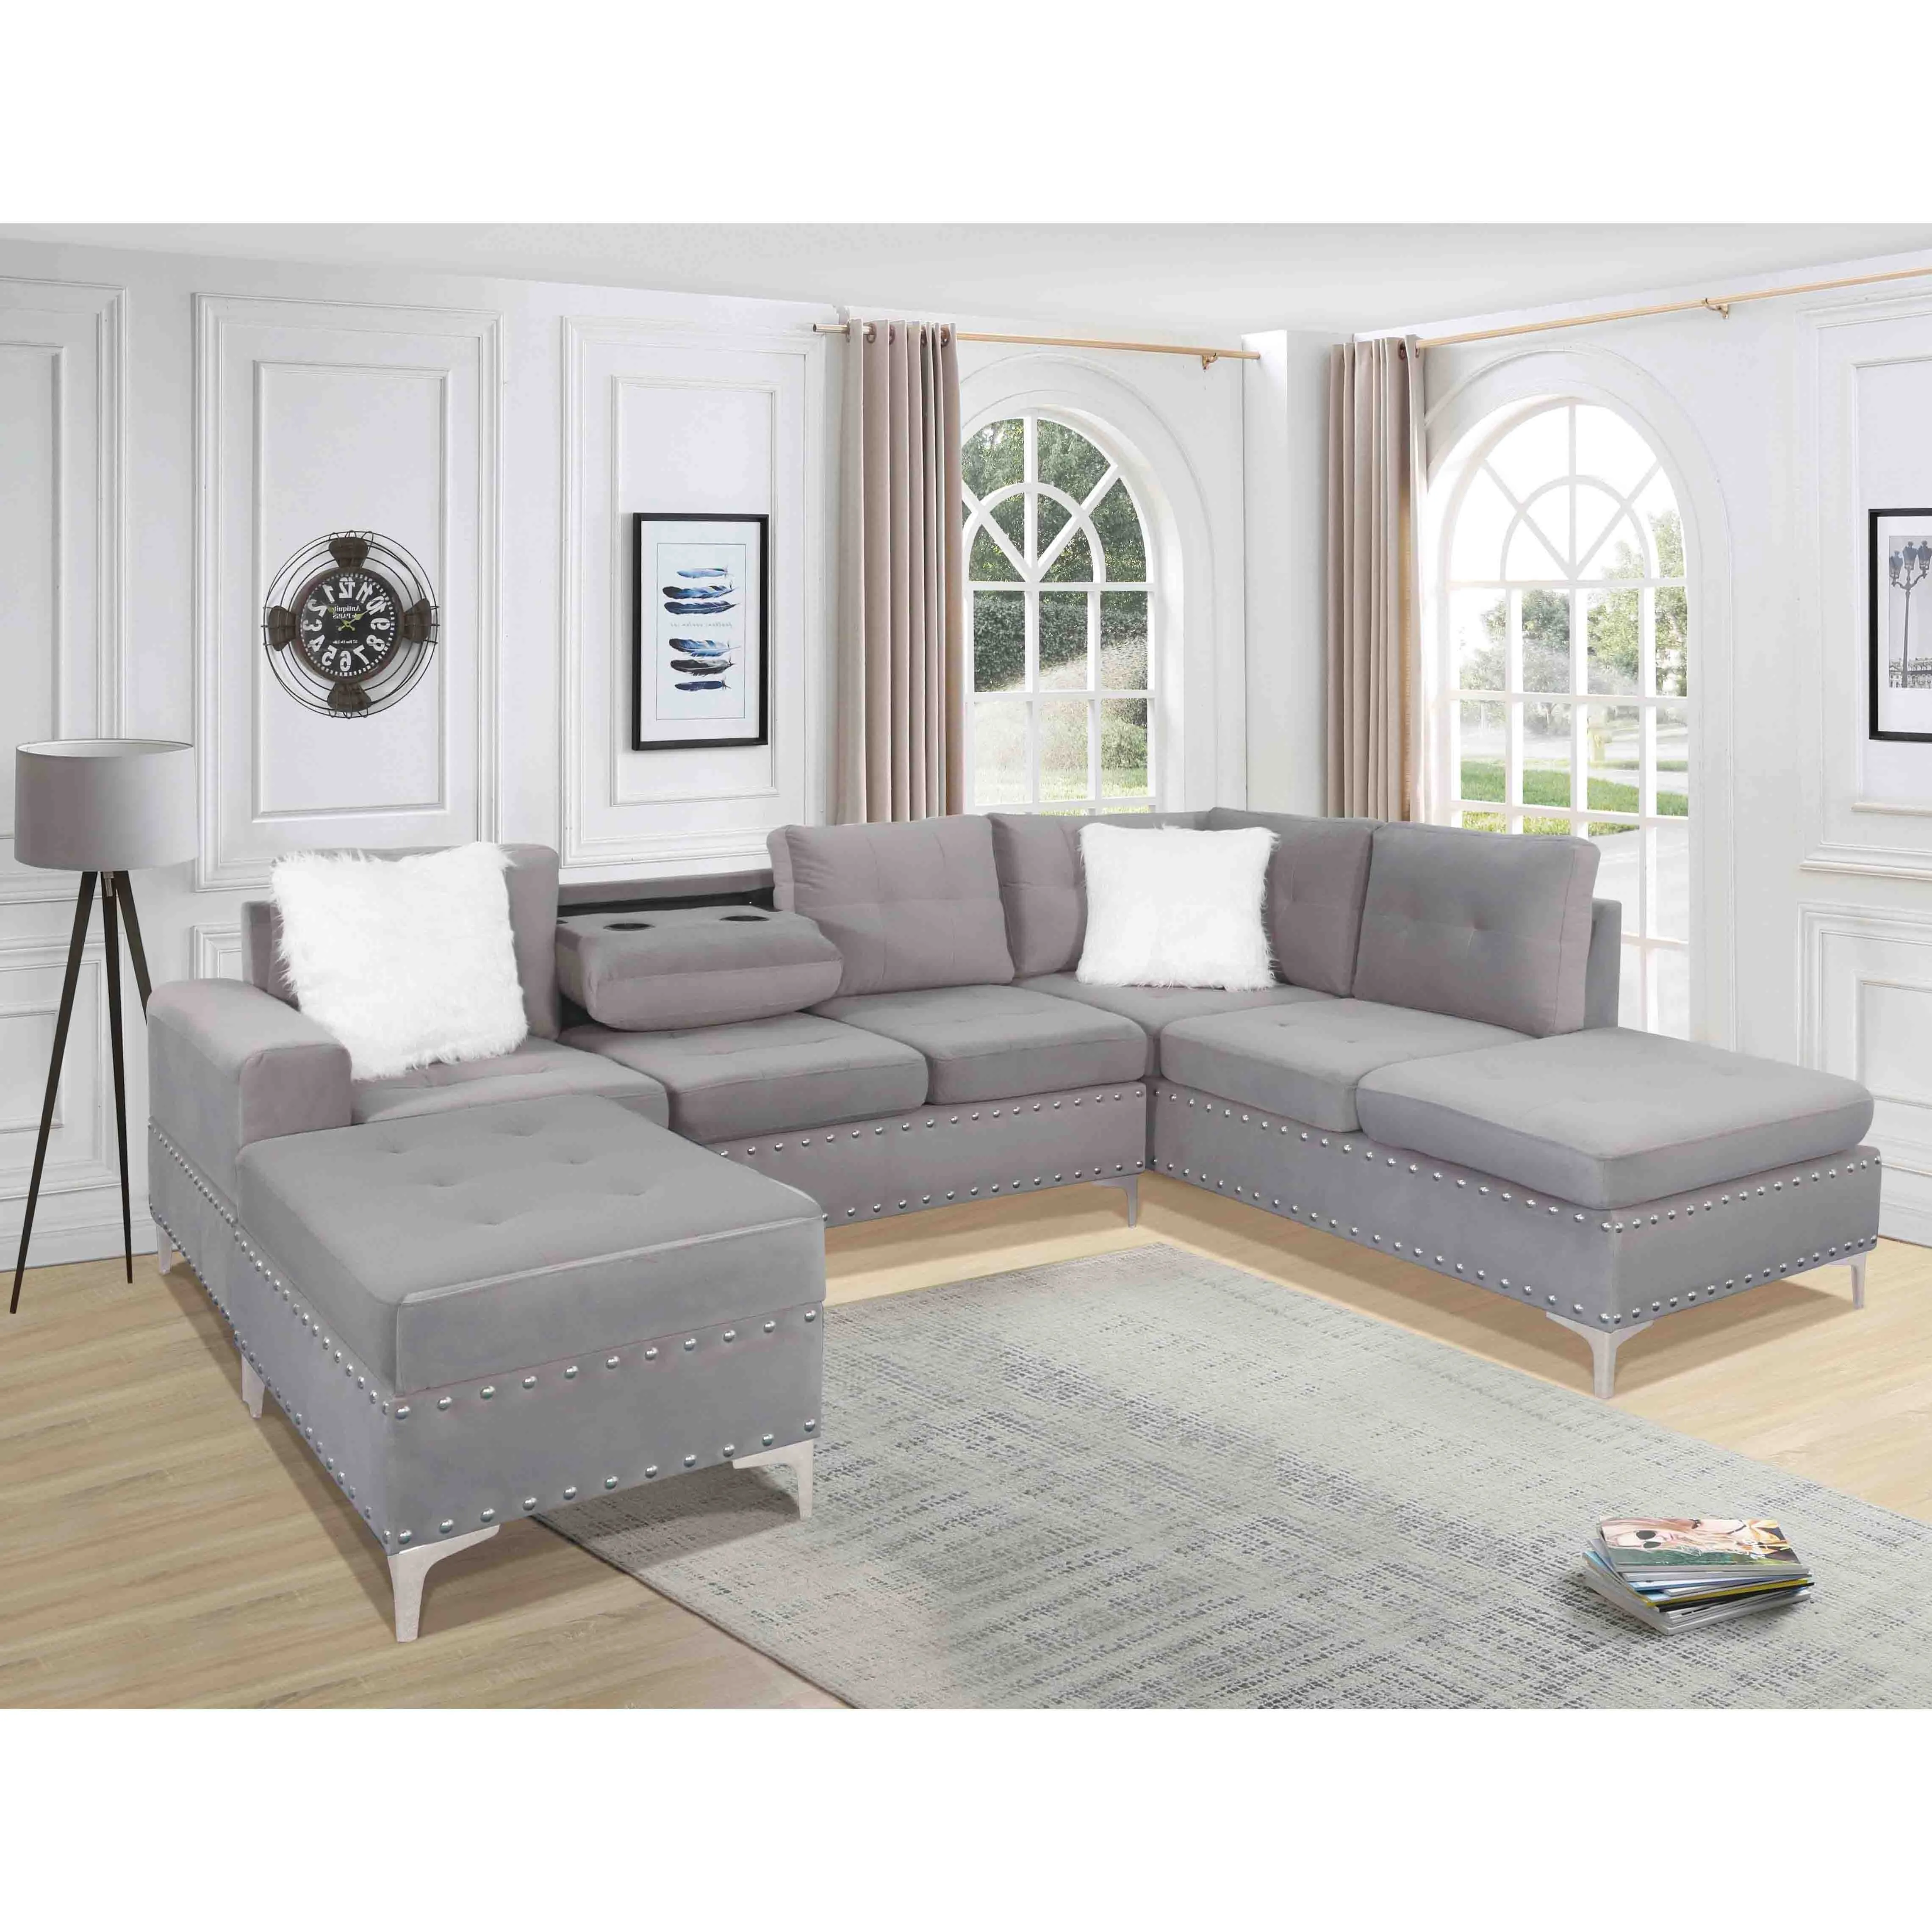 फैक्टरी प्रत्यक्ष बिक्री Fashional अनुभागीय reclining सोफा सेट होम फर्नीचर आधुनिक कमरे में रहने वाले झुकनेवाला 3 2 1 सोफे कमरे में रहने वाले